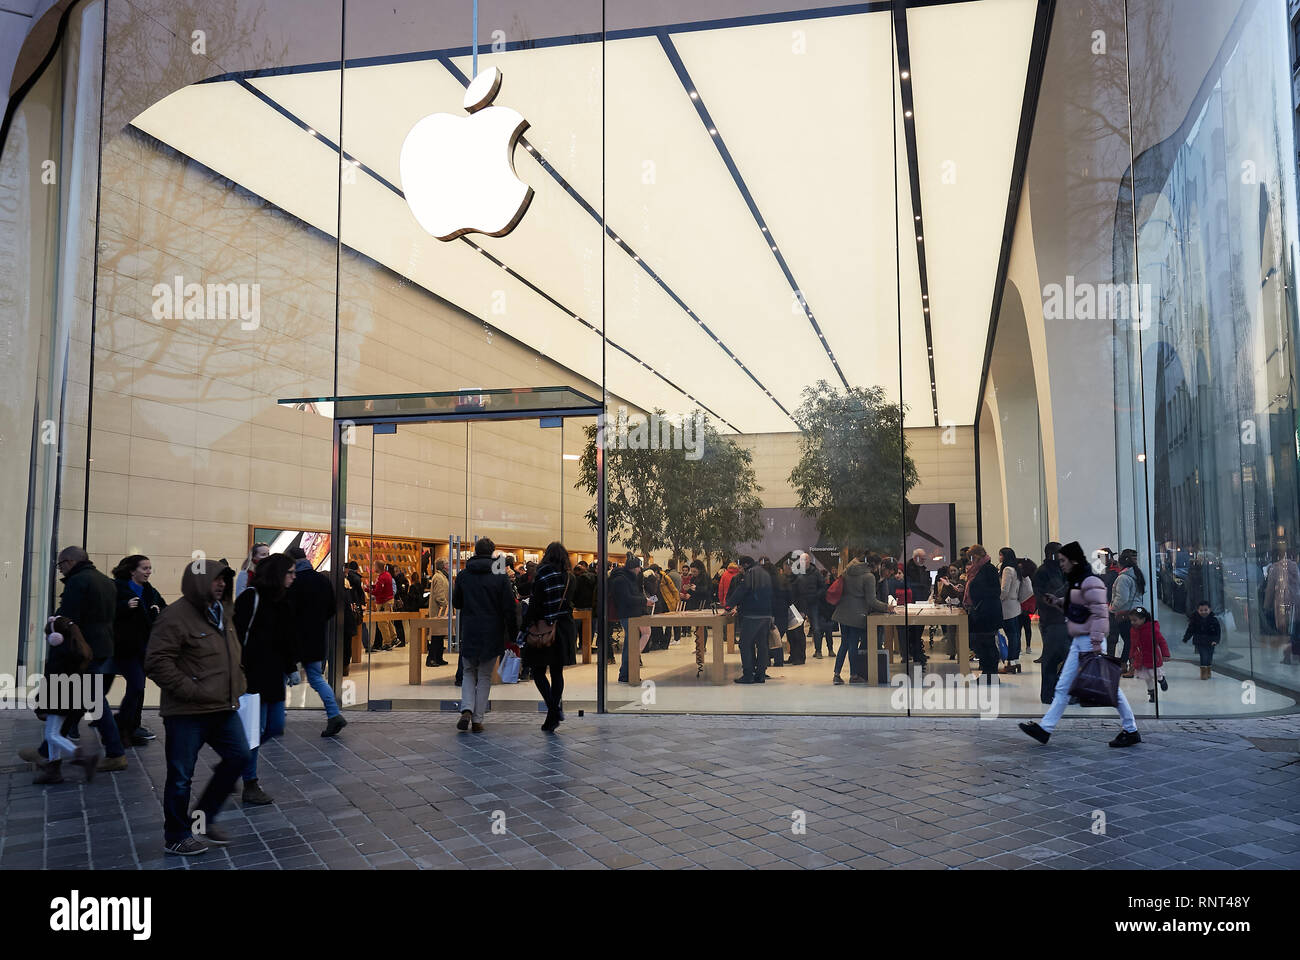 15.12.2018, Bruxelles, Bruxellescapitale, Belgio - passanti nella parte anteriore del negozio Apple Store su Avenue de la Toison d'Or. 00R181215D059CAROEX.JPG [MODELLO R Foto Stock